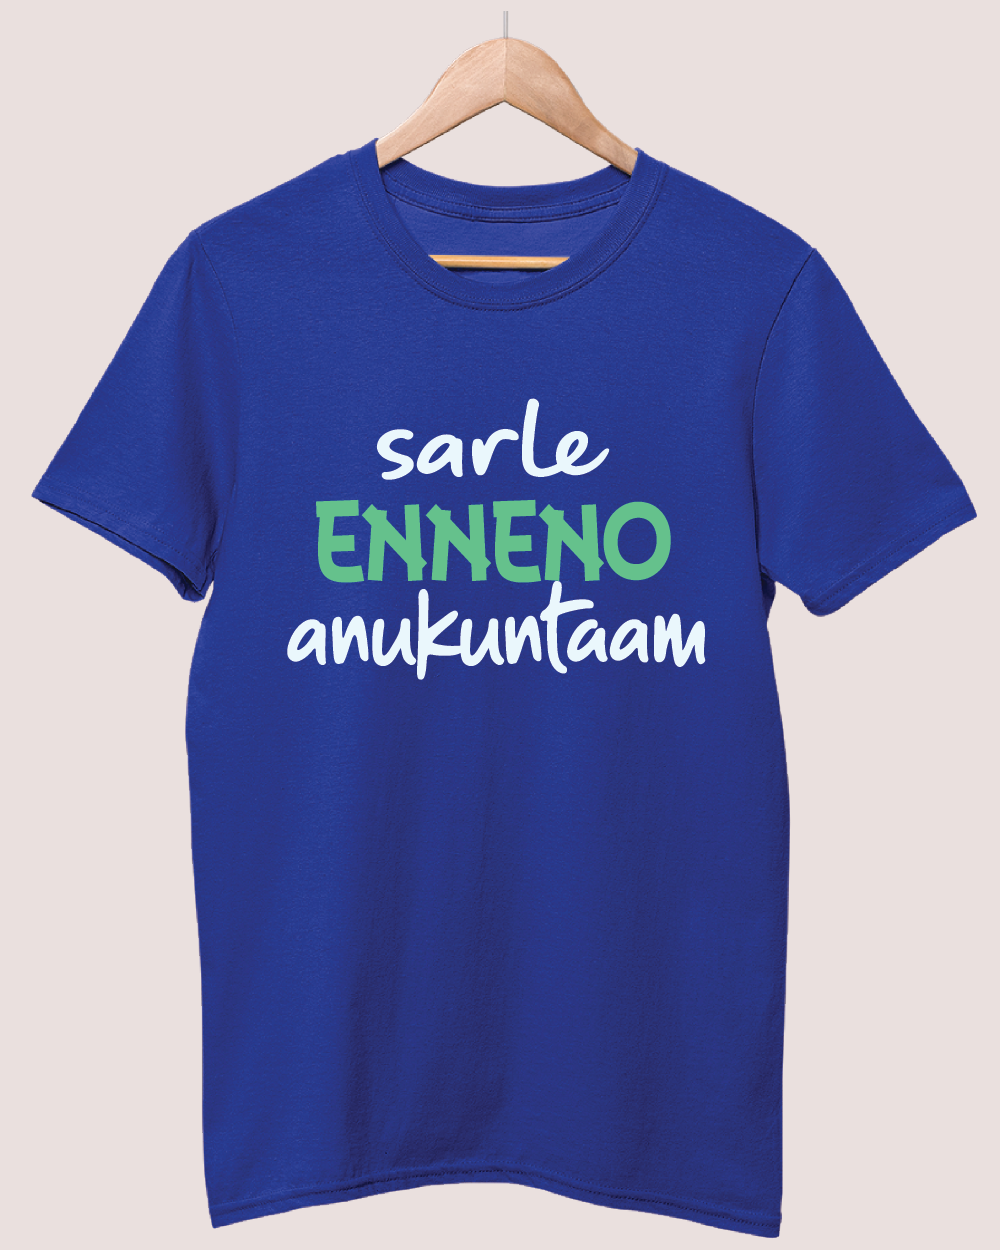 Sarle Ennenno Anukuntam T-shirt